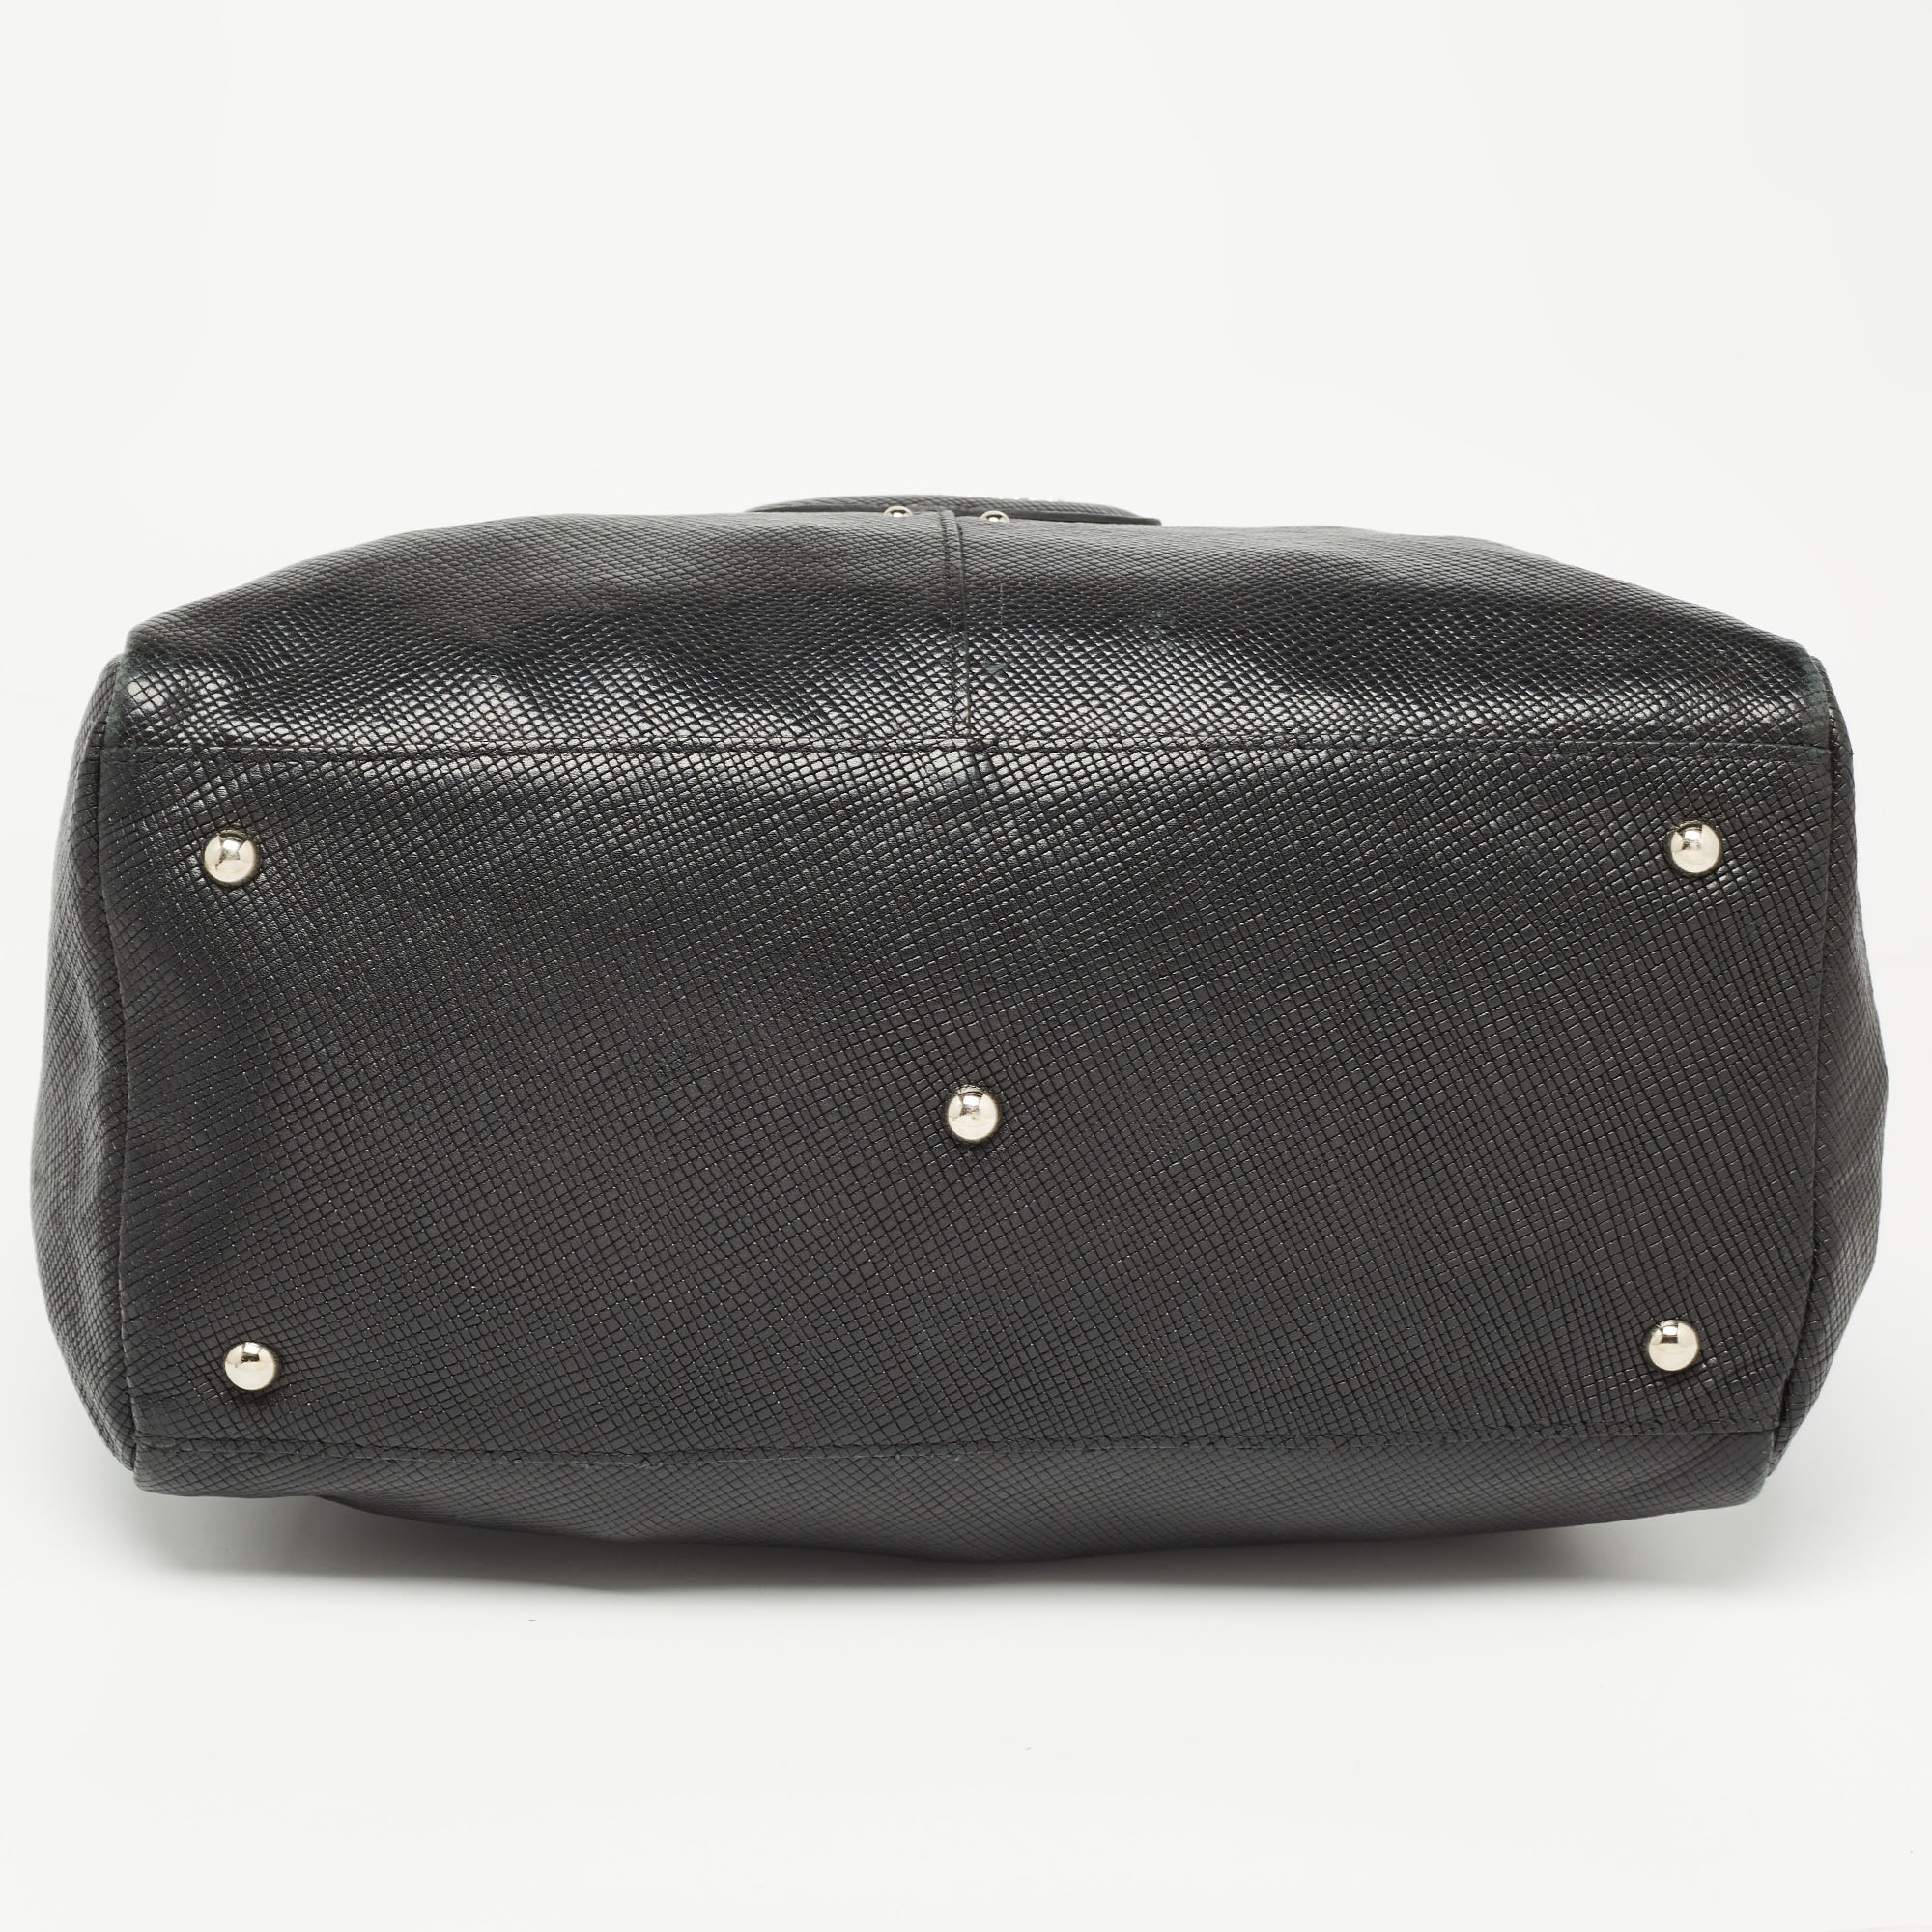 Longchamp Black Textured Leather Tri-Quadri Satchel